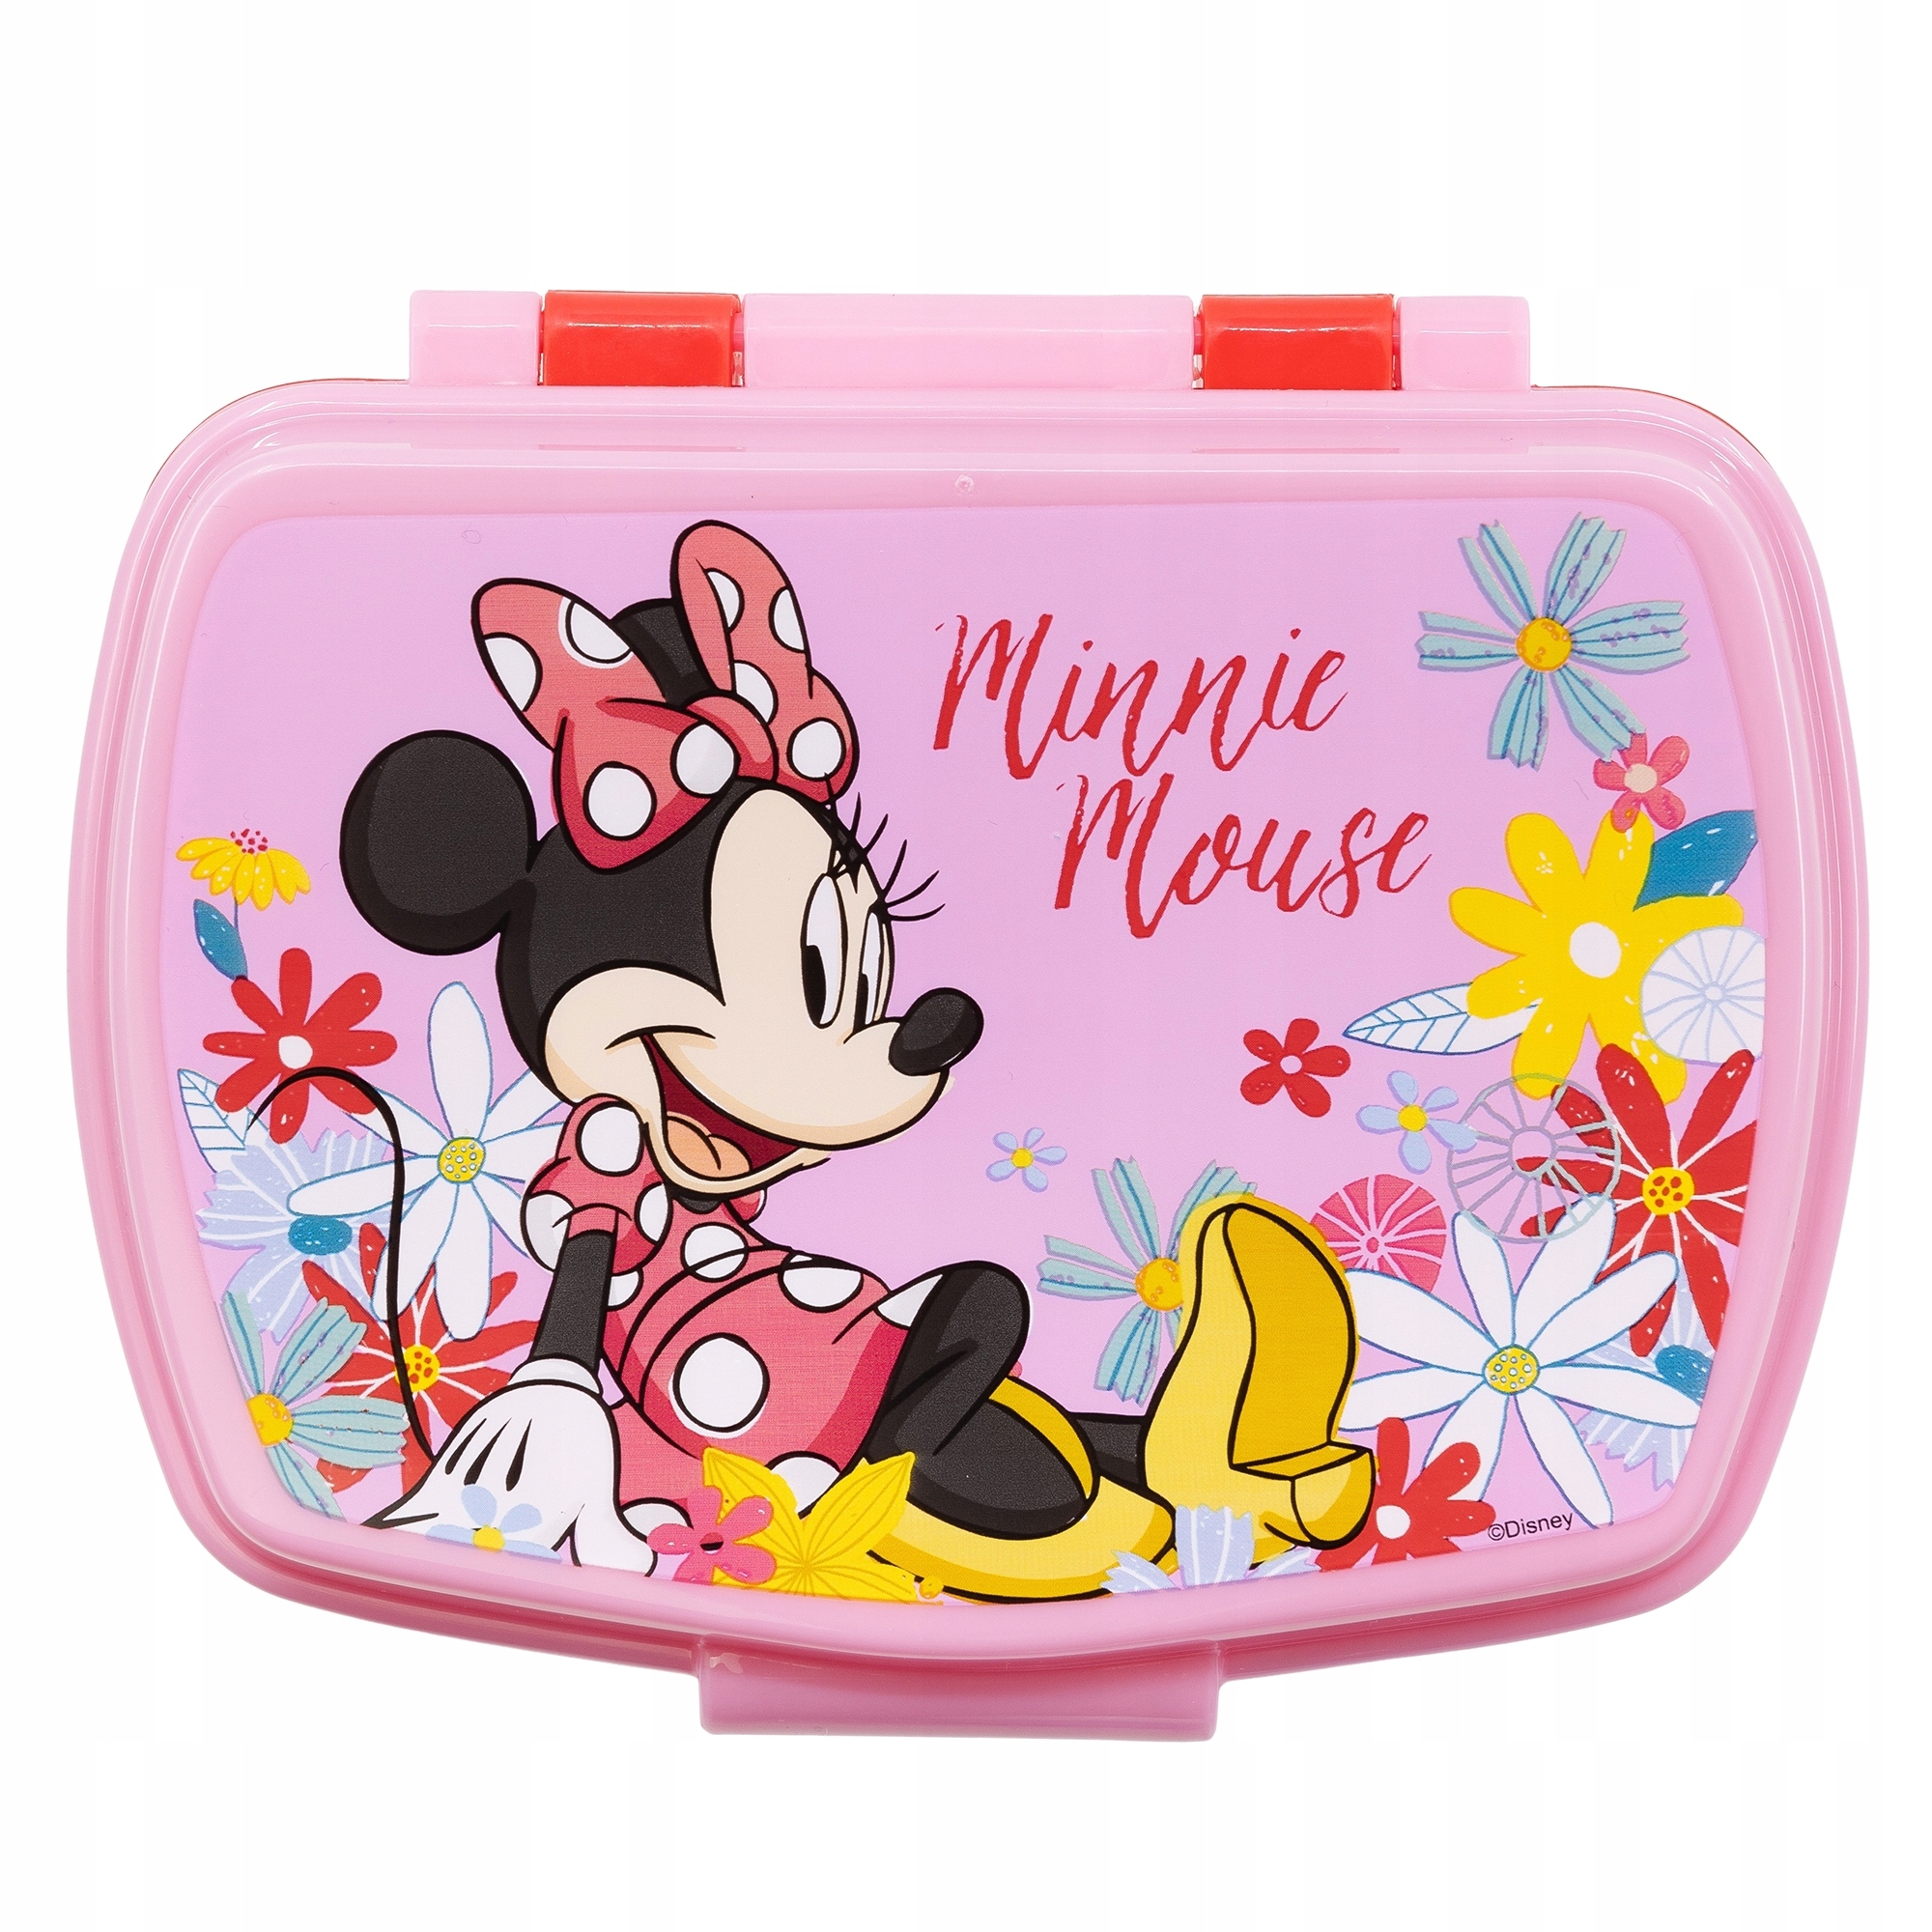 Pudełko śniadaniowe Disney Minnie